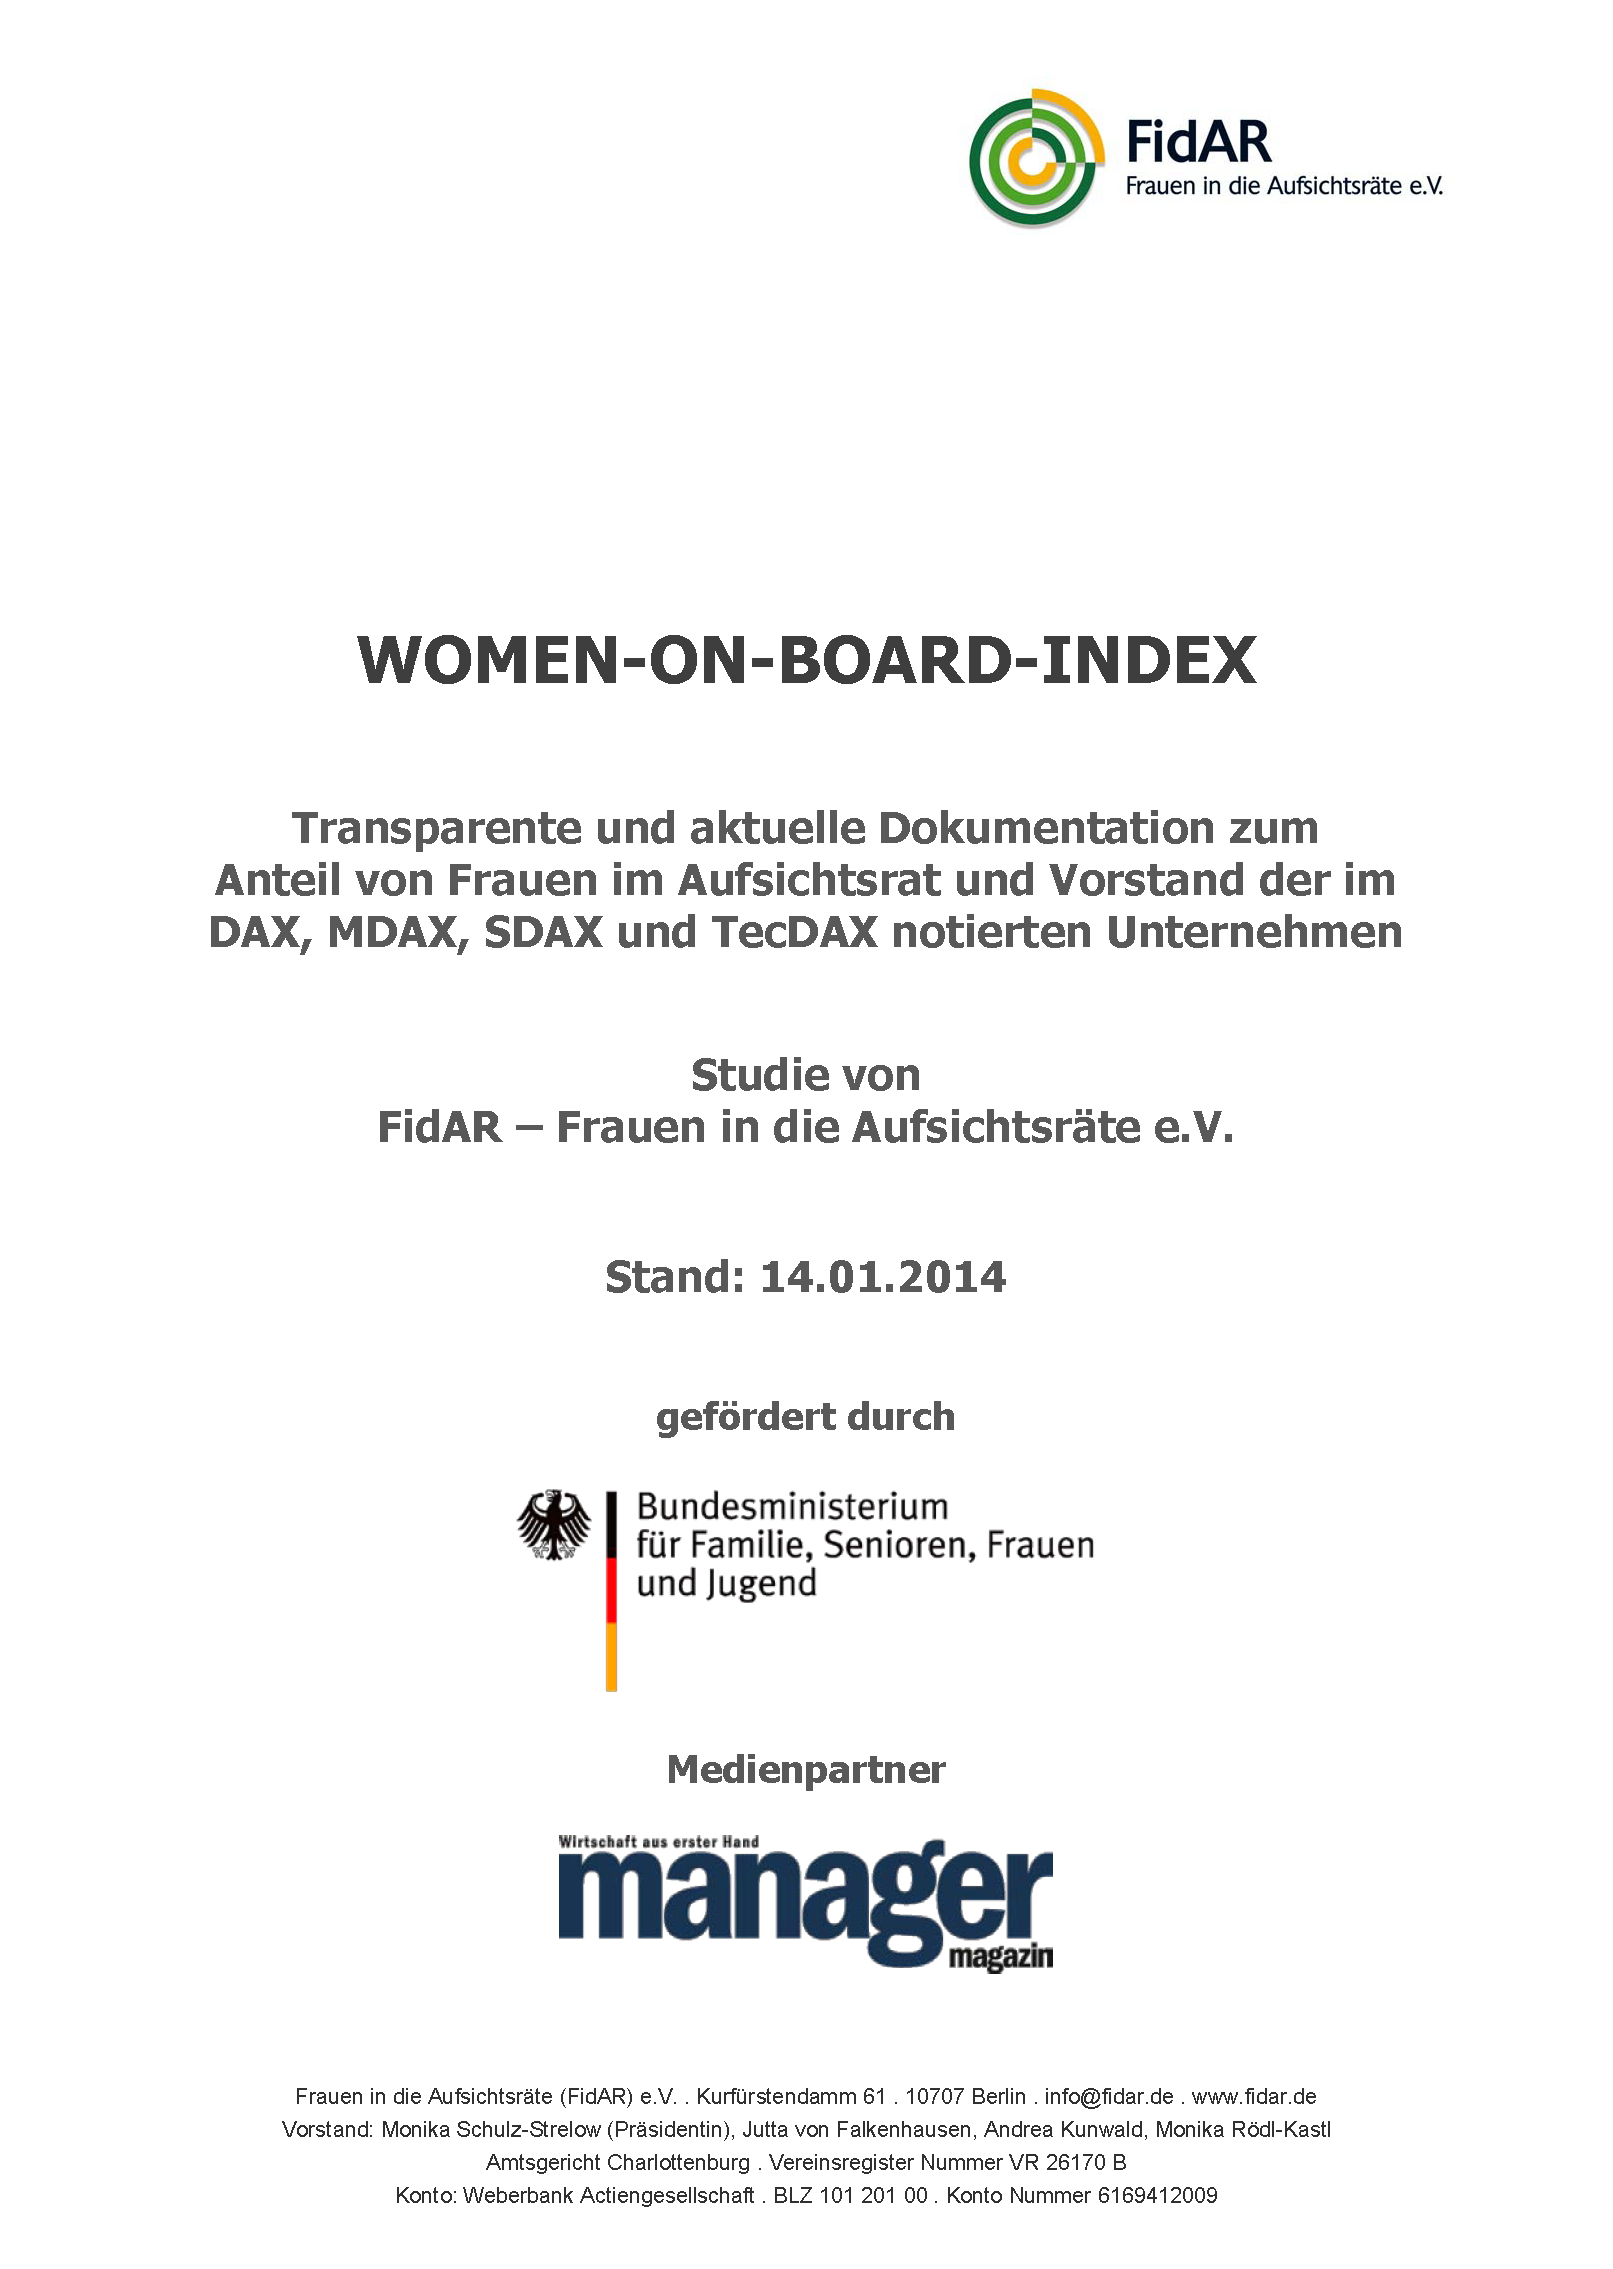 WoB-Index 160 2014-1